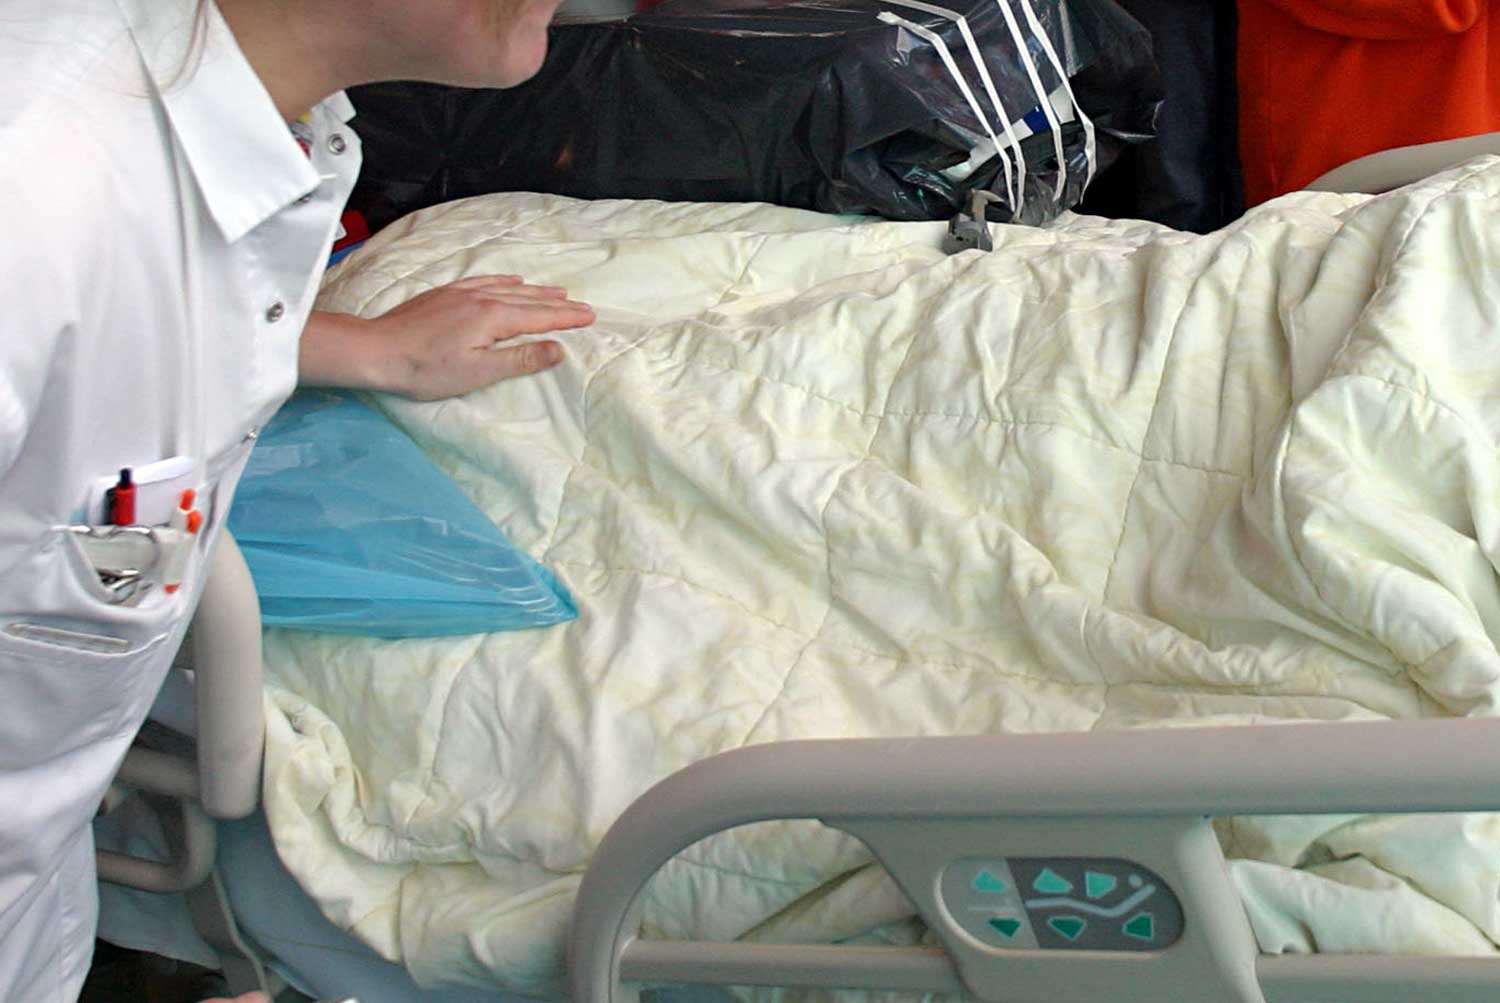 verpleegster-patient-bed